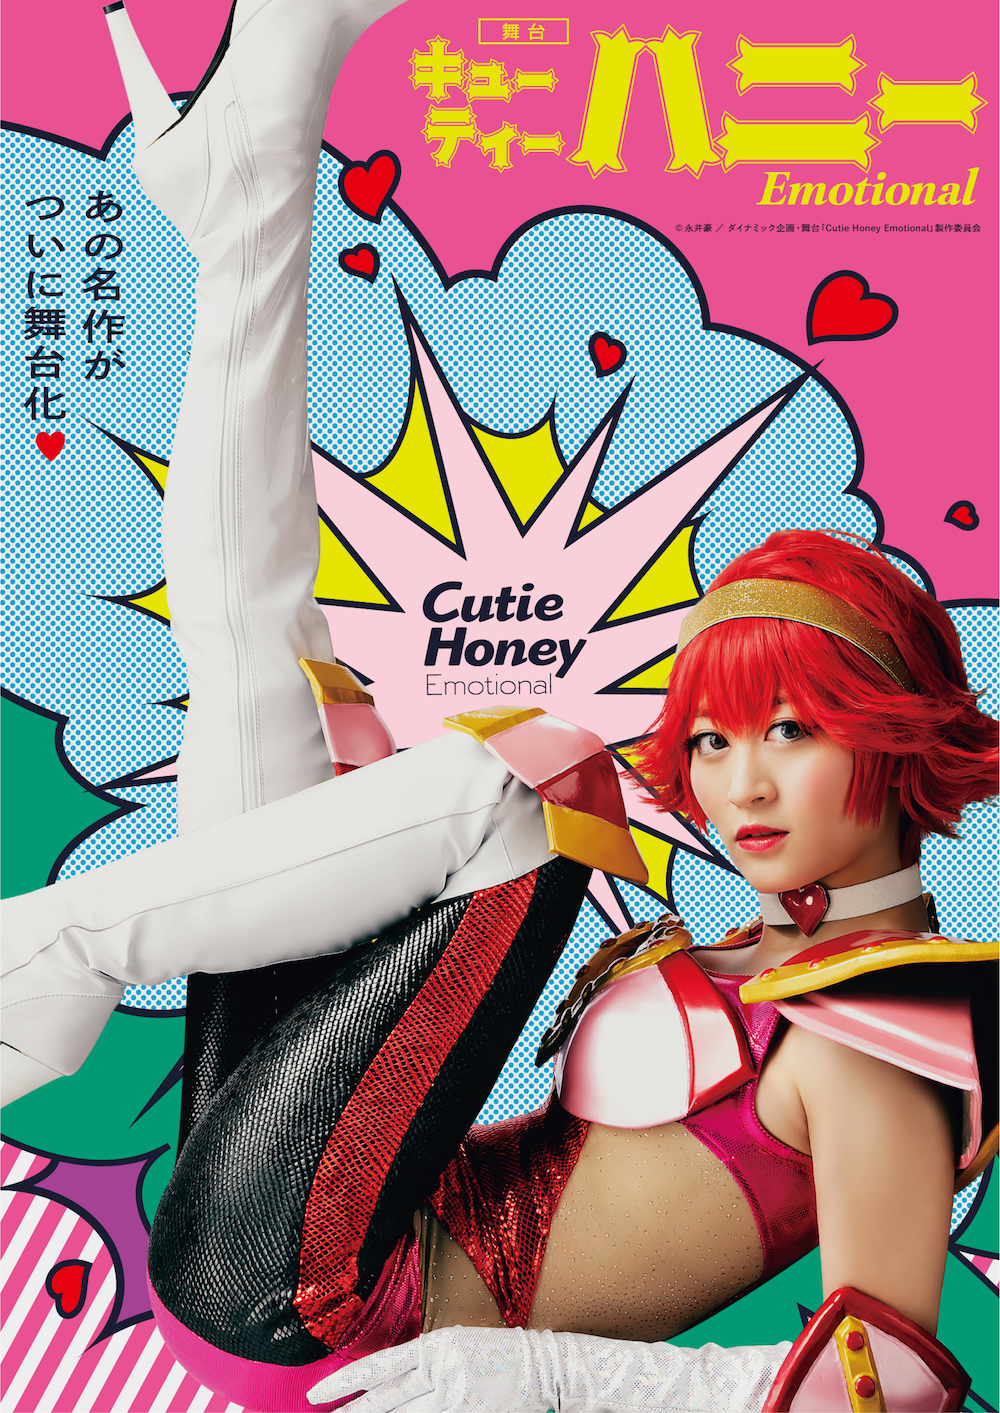 上西恵／ (C)永井豪／ダイナミック企画・舞台「Cutie Honey Emotional」製作委員会